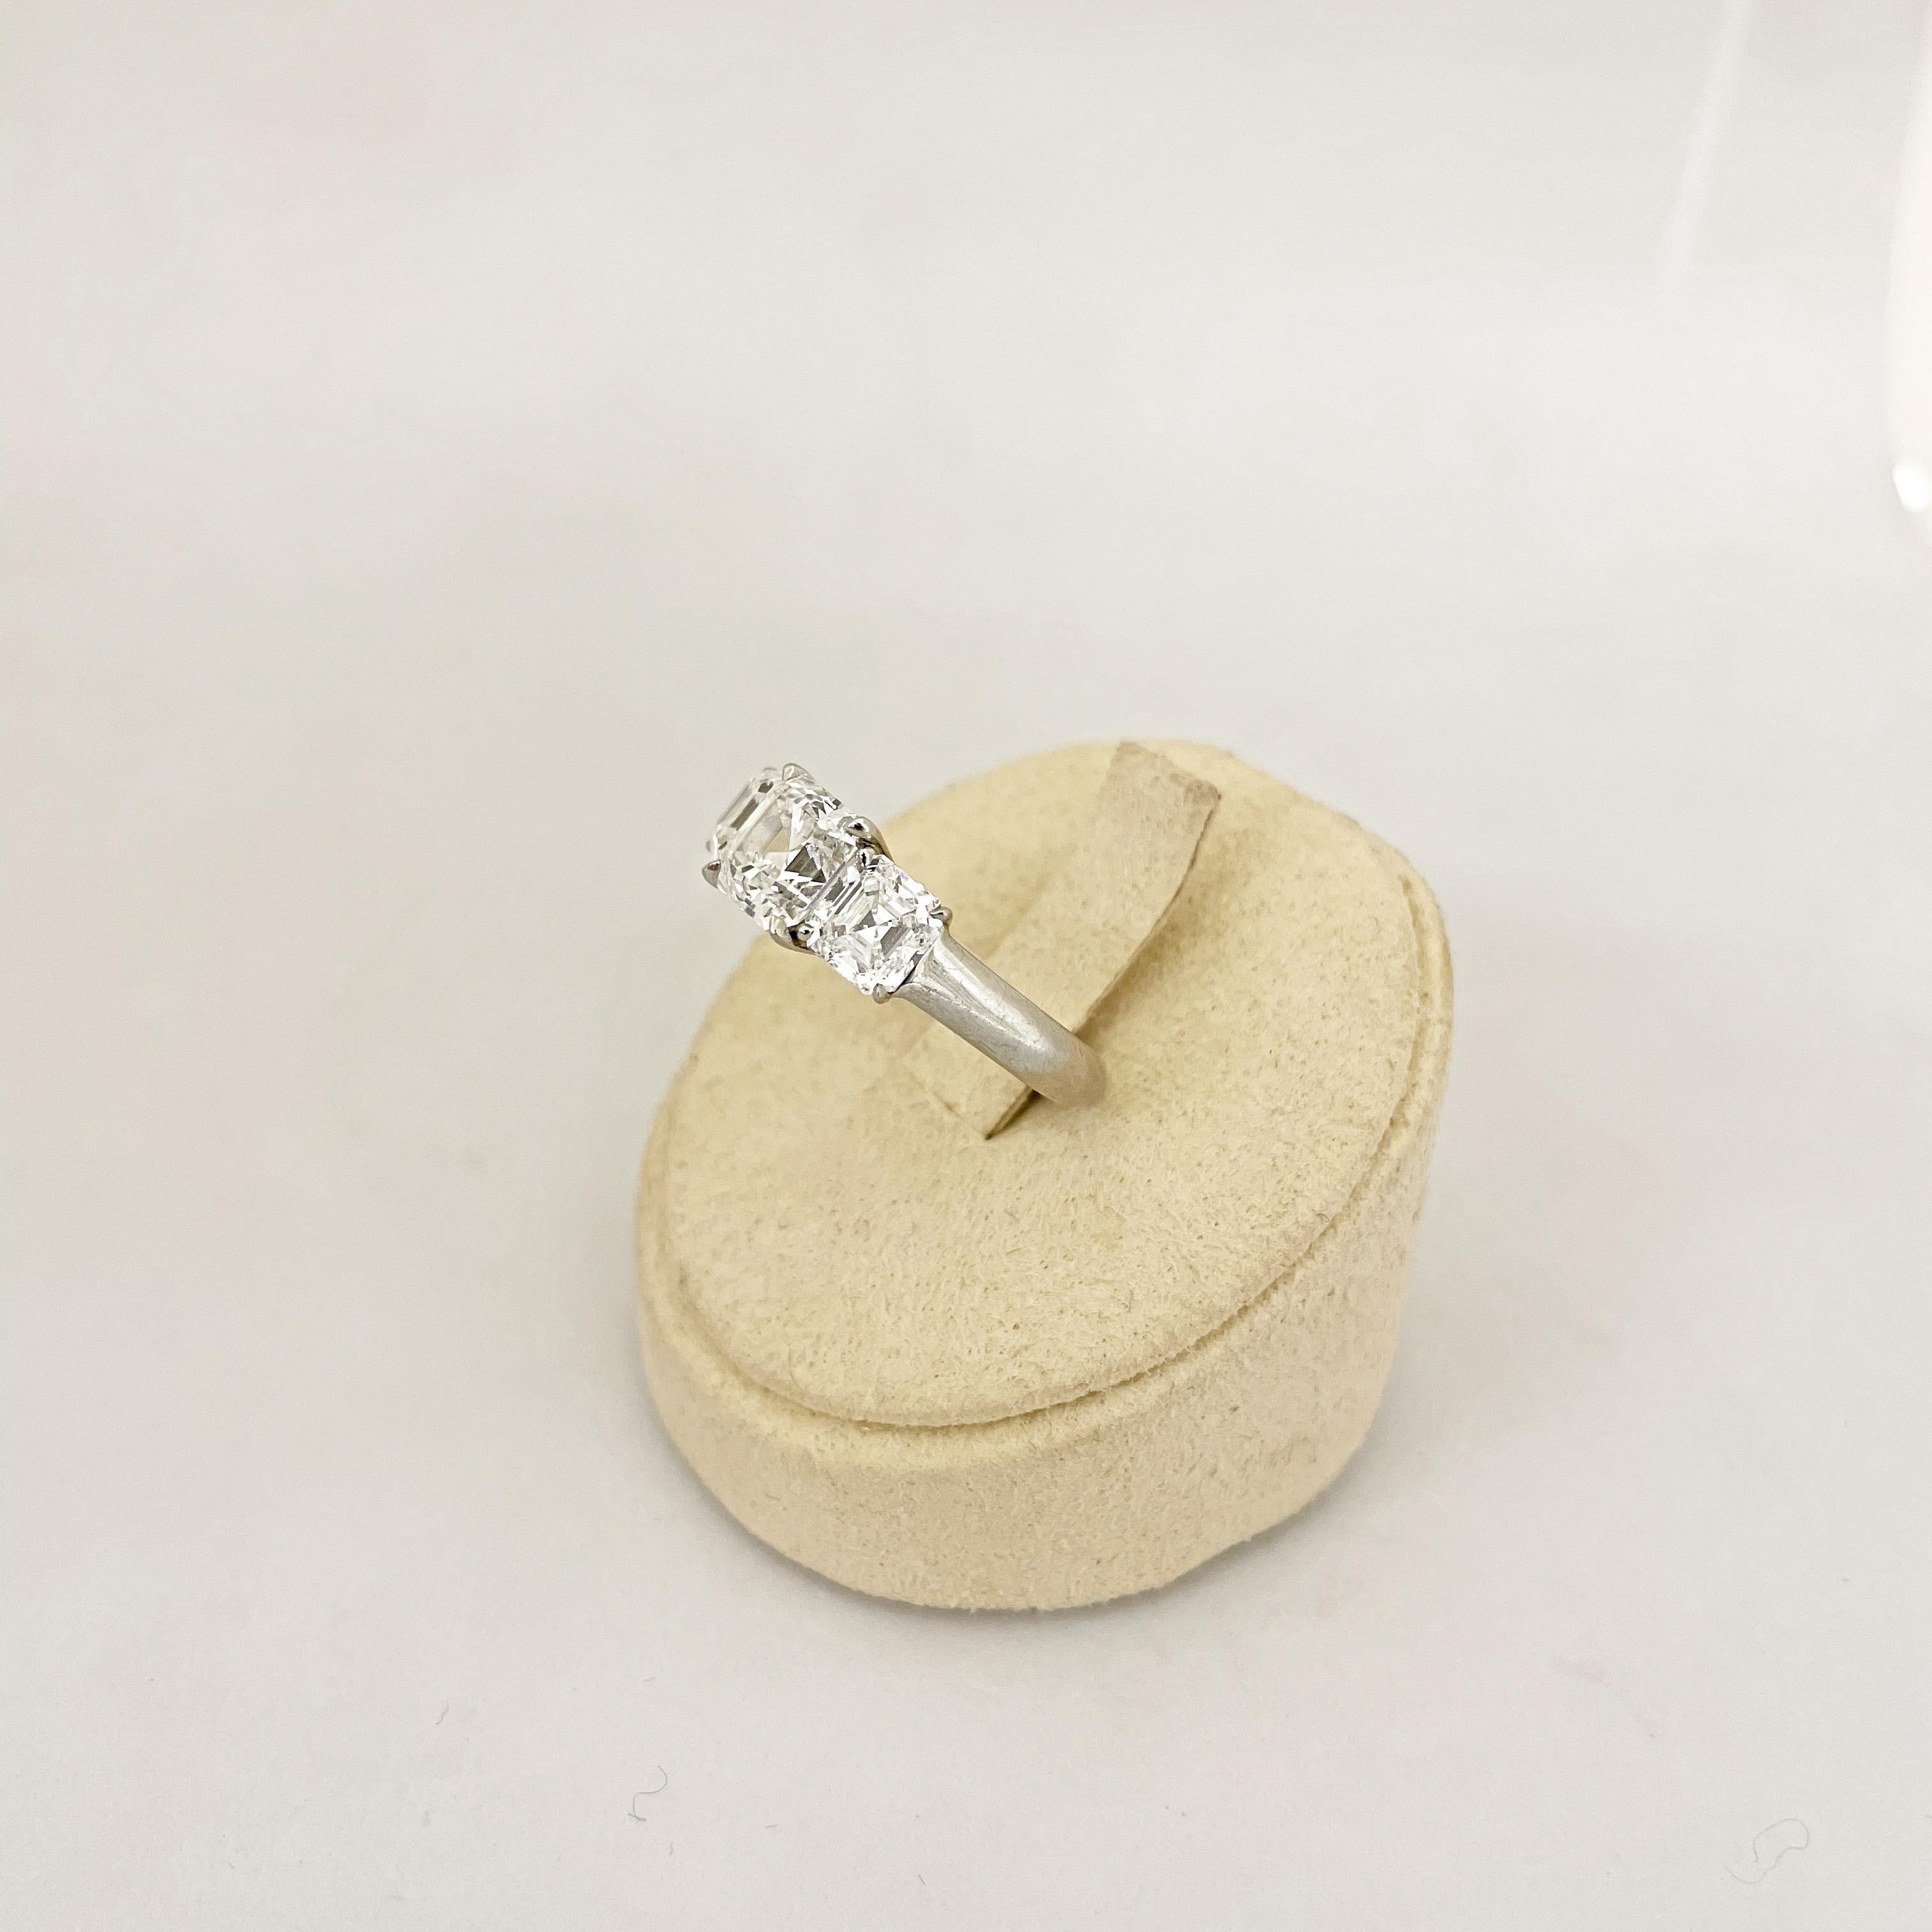 Cellini GIA Certified 3 Stone Square Emerald Cut E color Diamond Ring For Sale 8